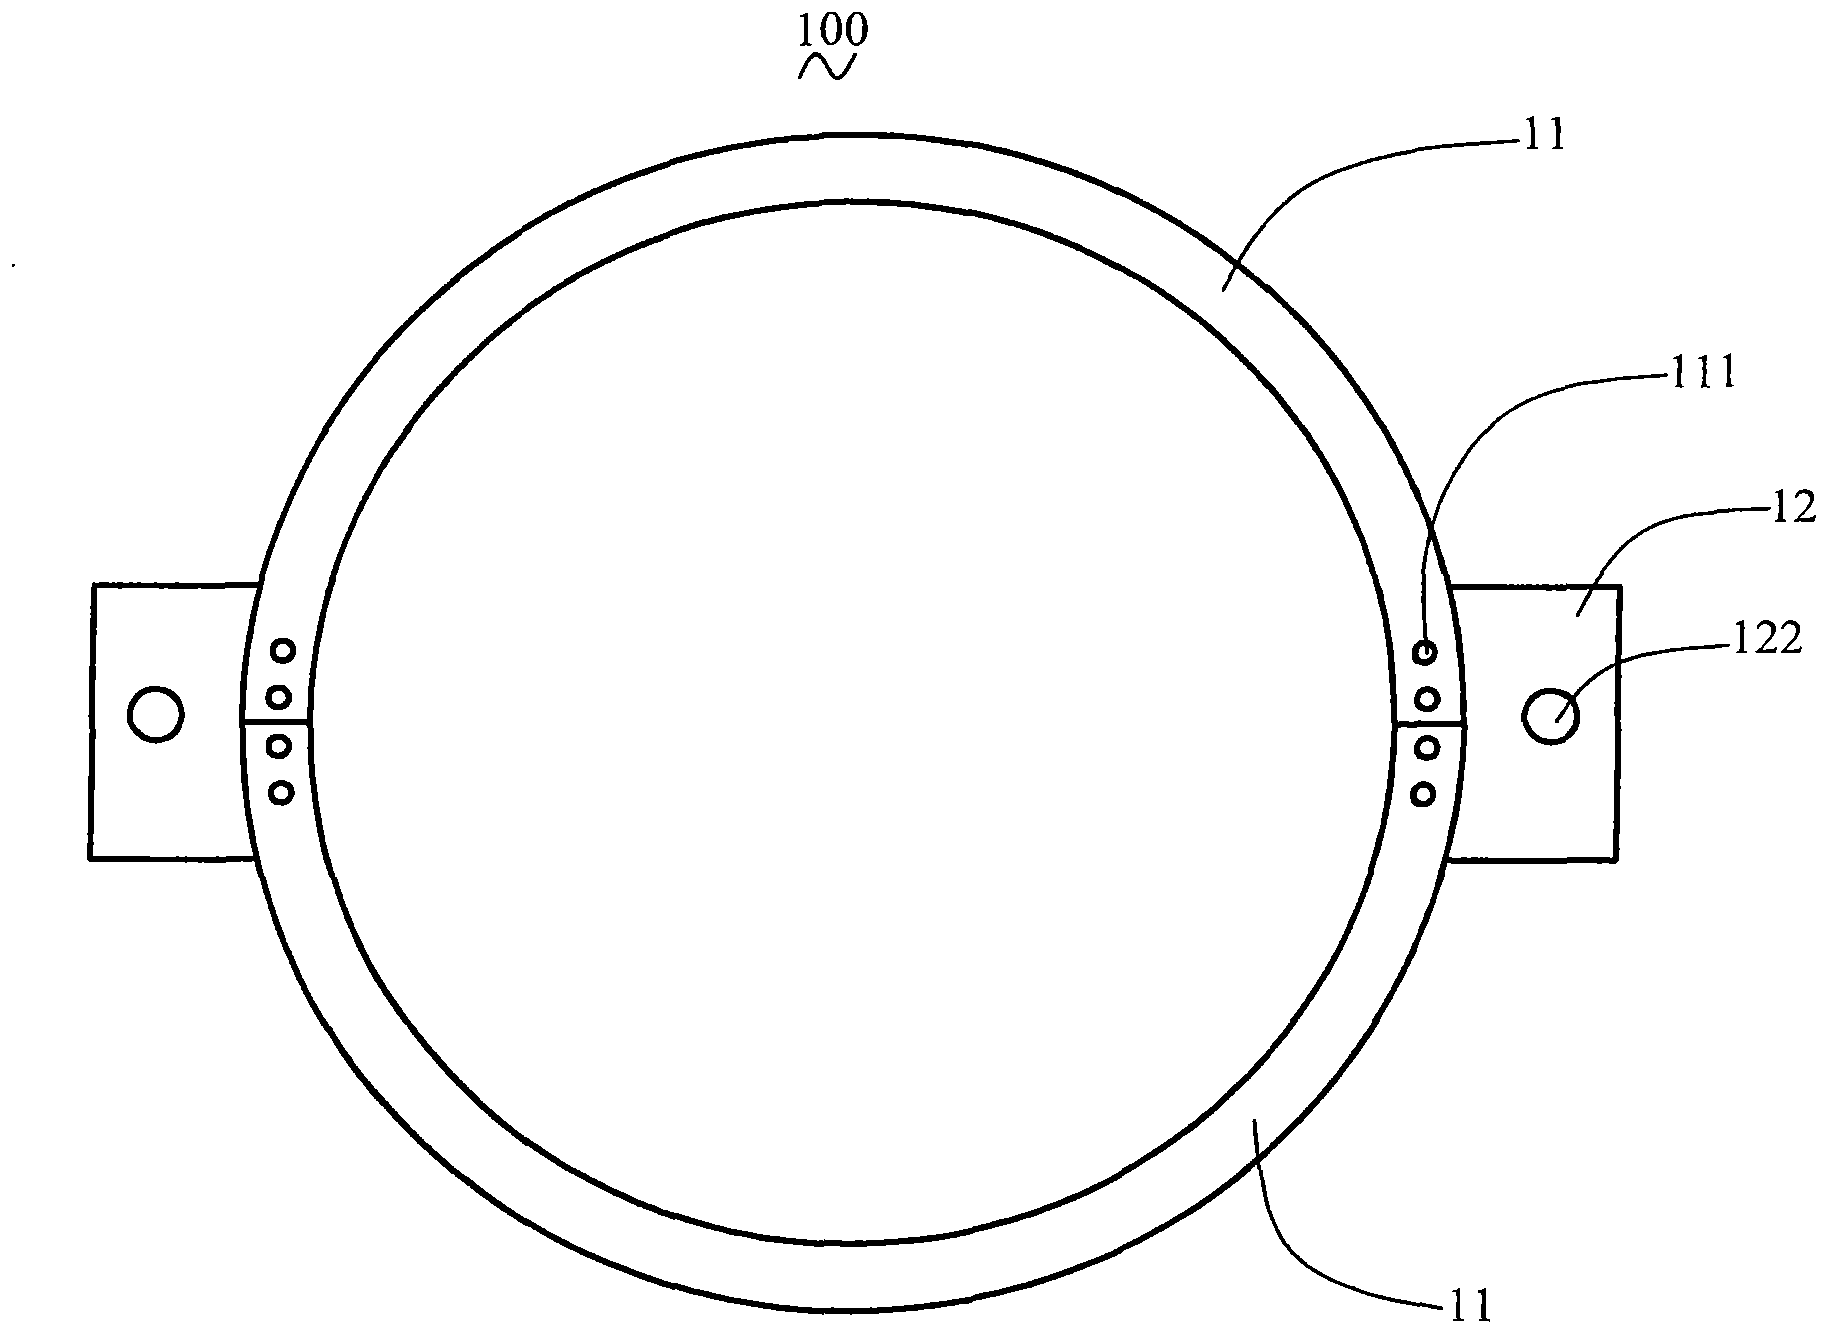 Large-diameter tube assembling and lifting tool